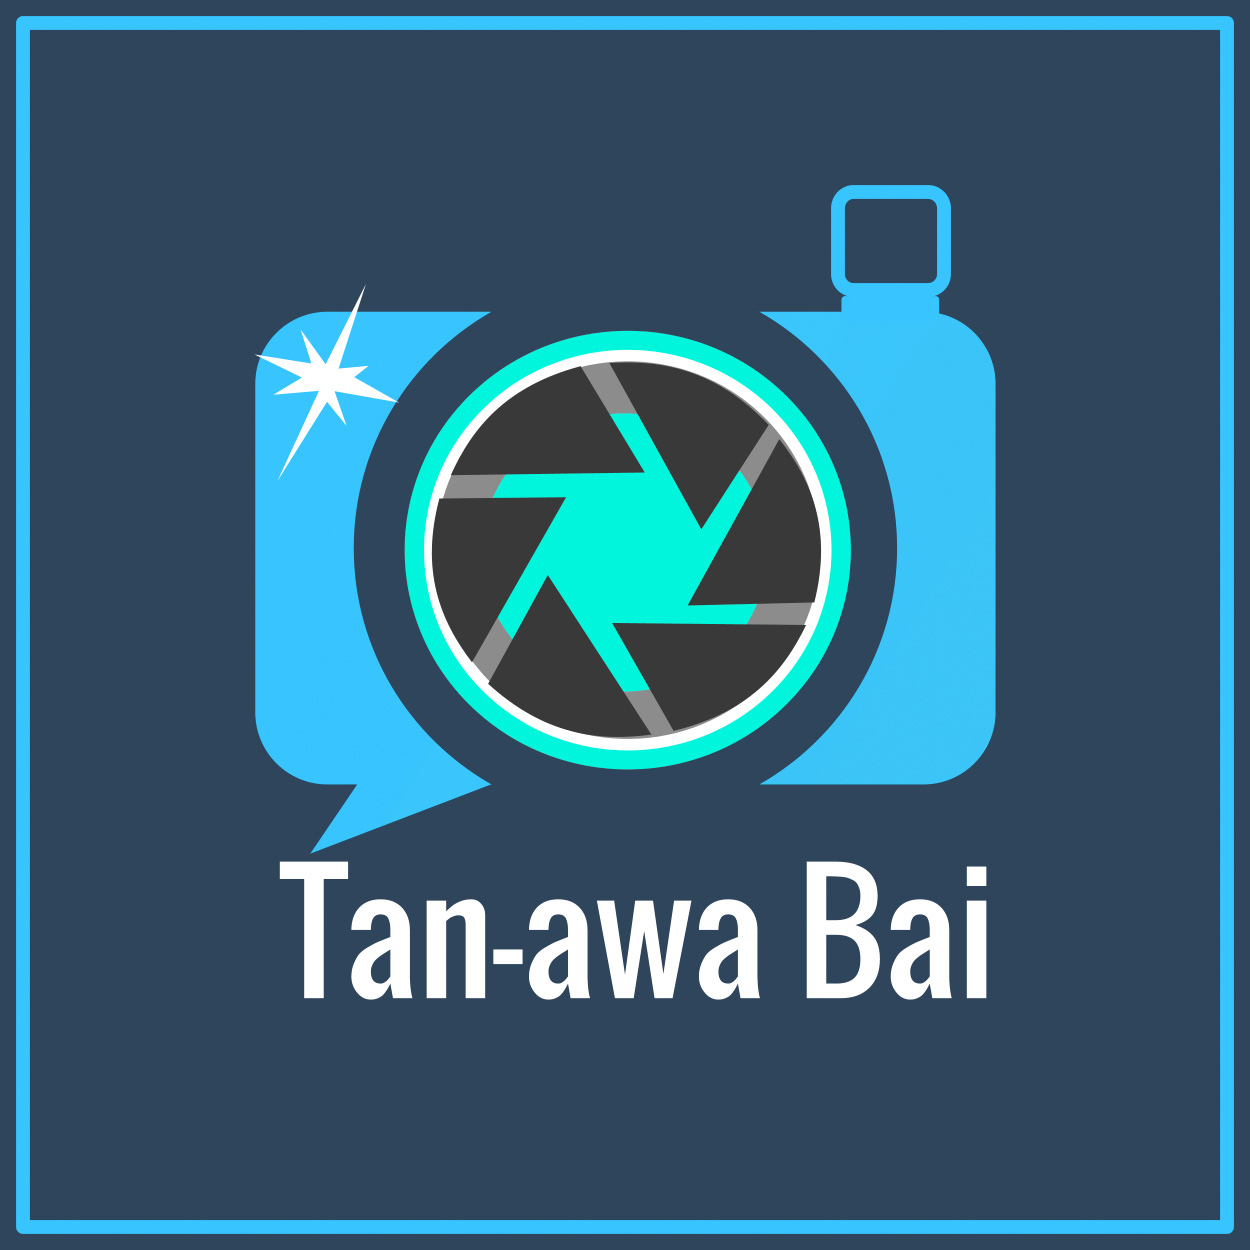 Tan-awa Bai